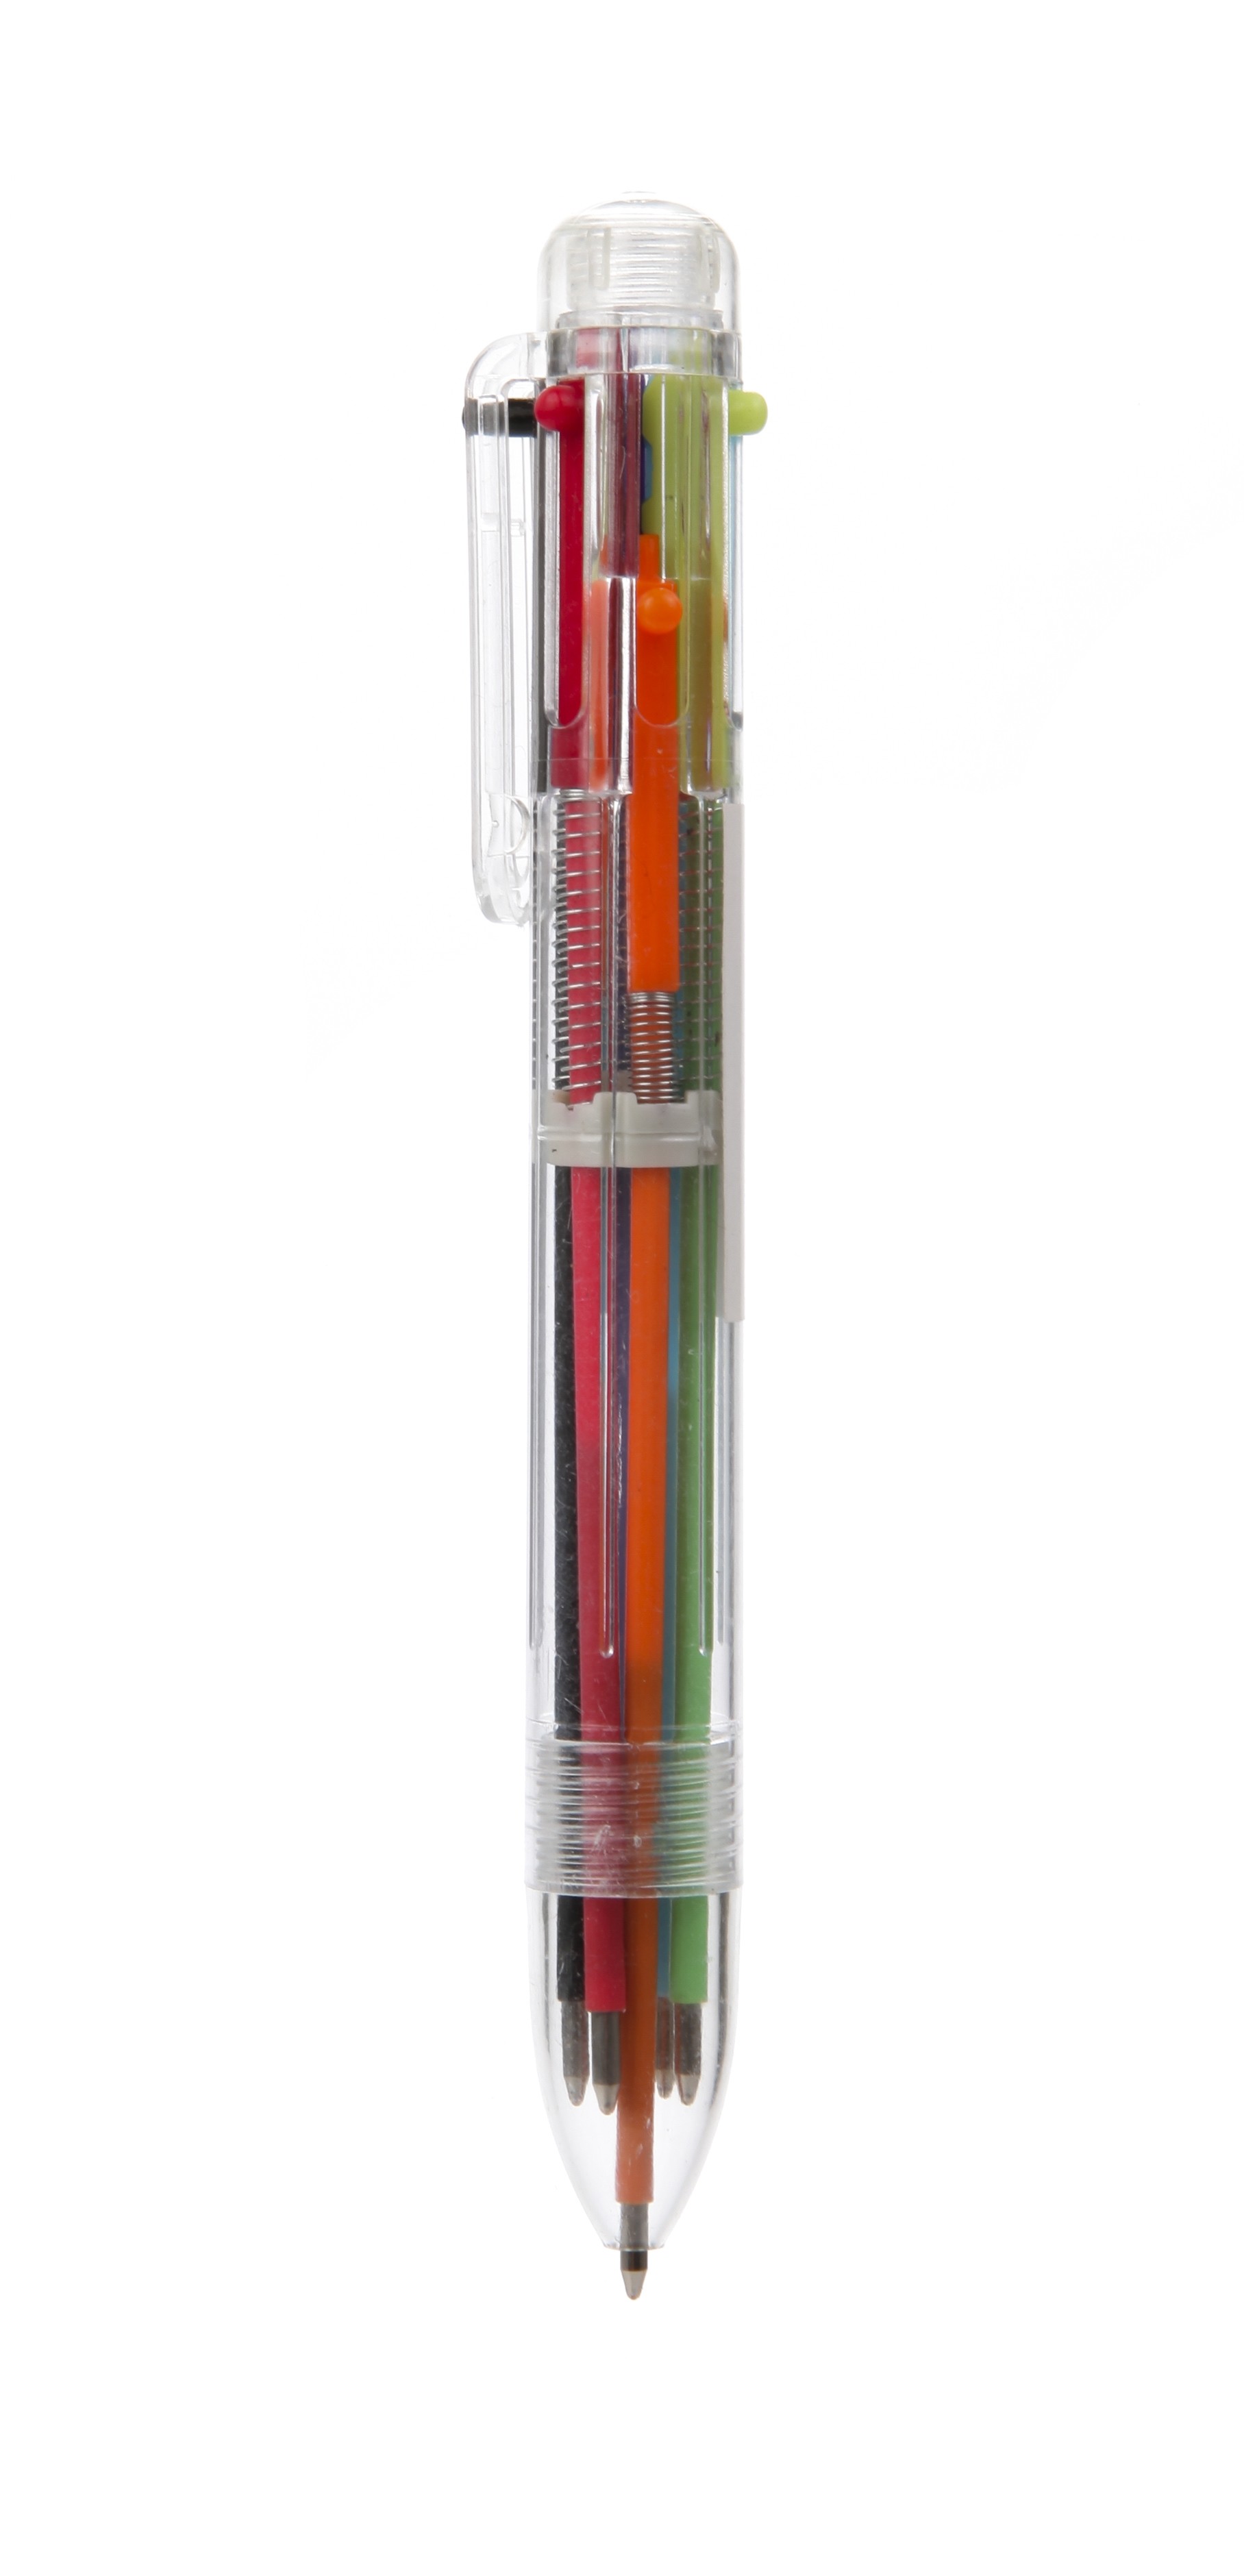 6 in 1 multi-colour retractable pen